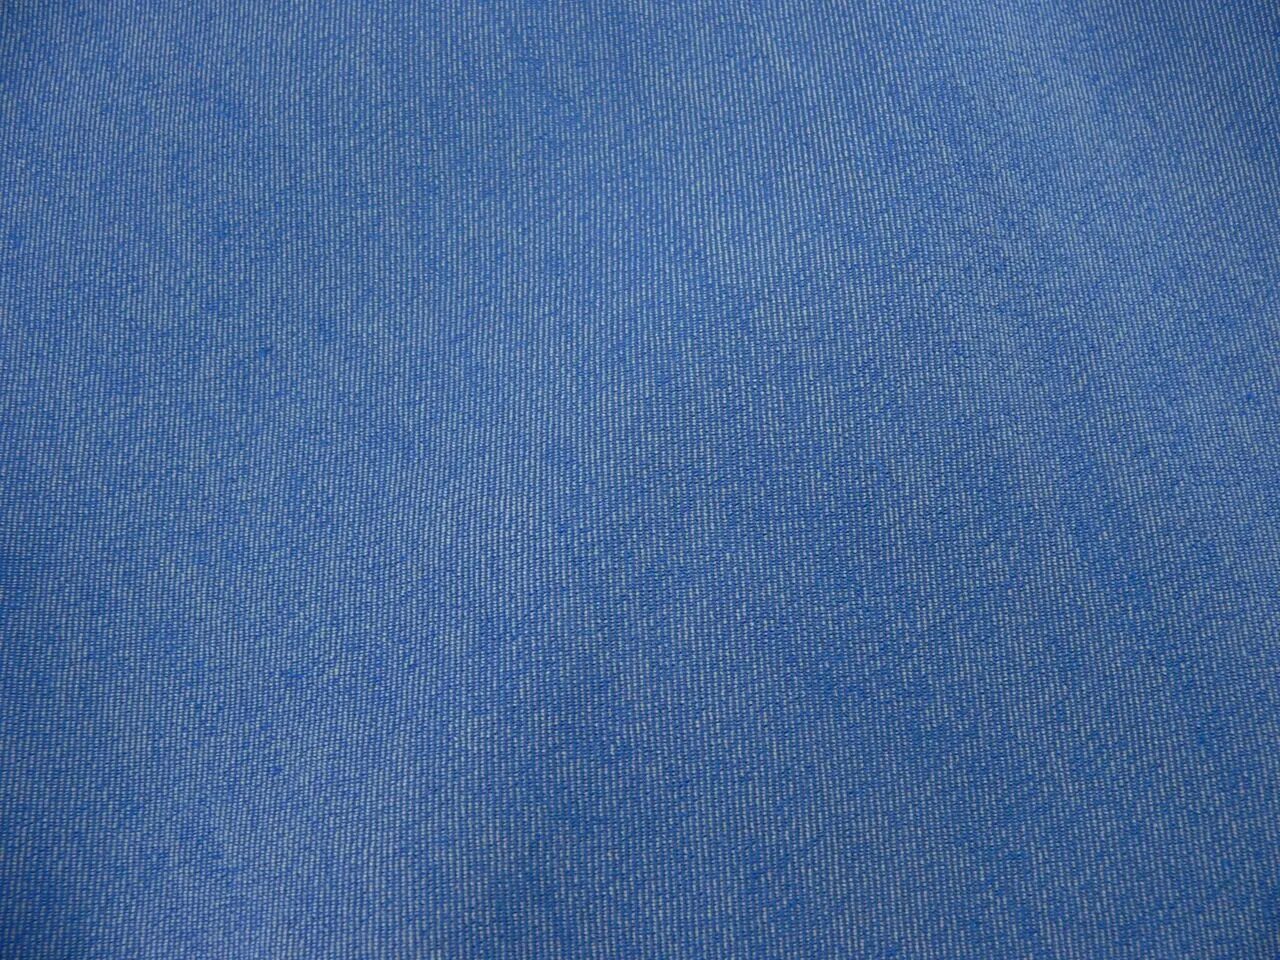 Джинсовая ткань. Фактура джинсовой ткани. Текстура джинсовой ткани. Синяя ткань.